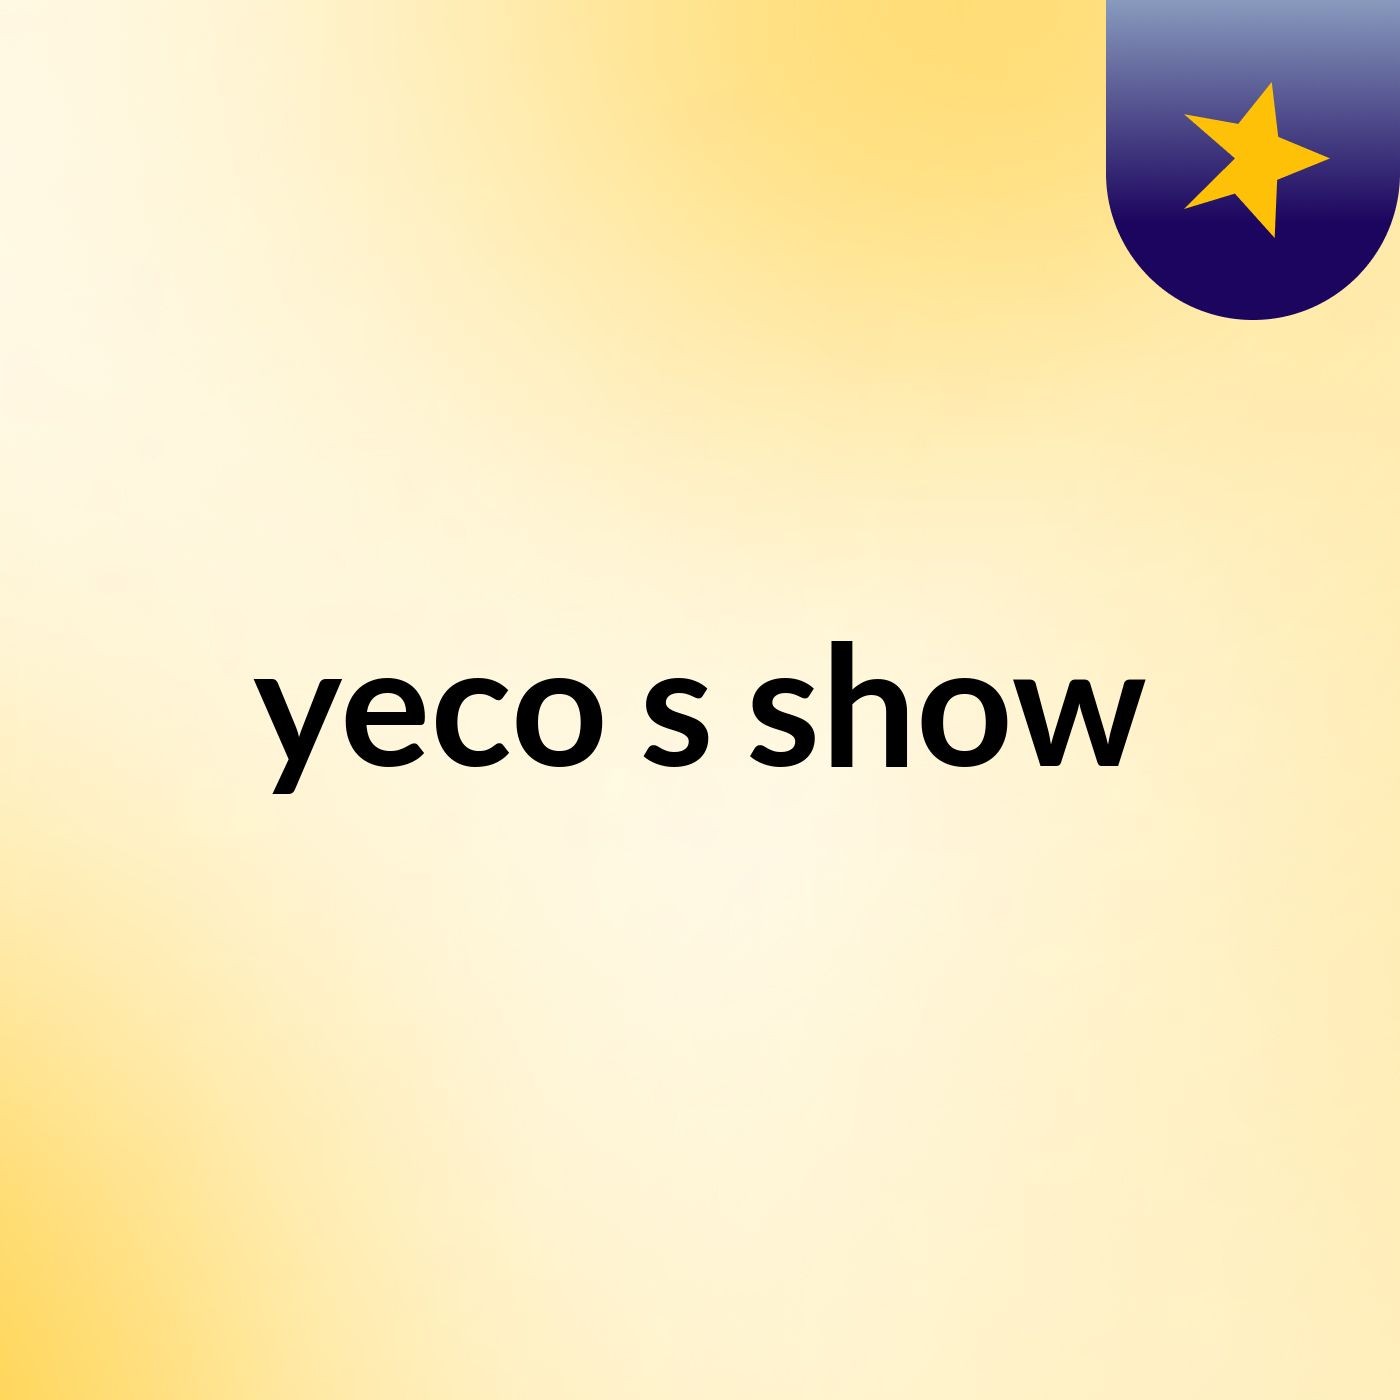 yeco's show